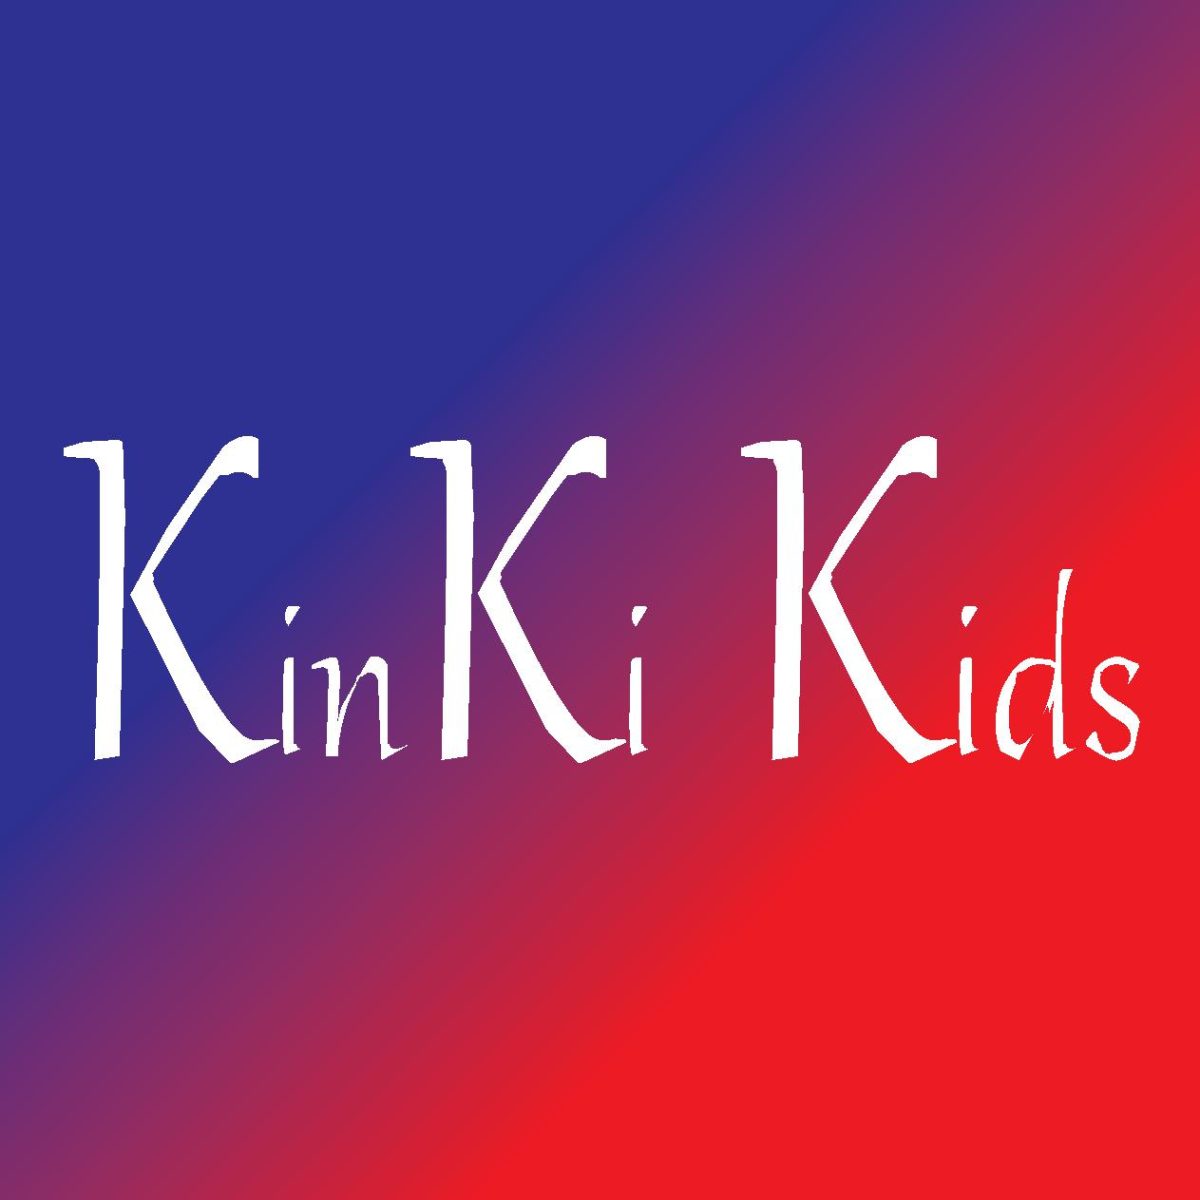 KinKi Kids 堂本光一が“一番怖かった”先輩グループ明かす「別に何されたとか何もない。いるだけで怖いんだよ」